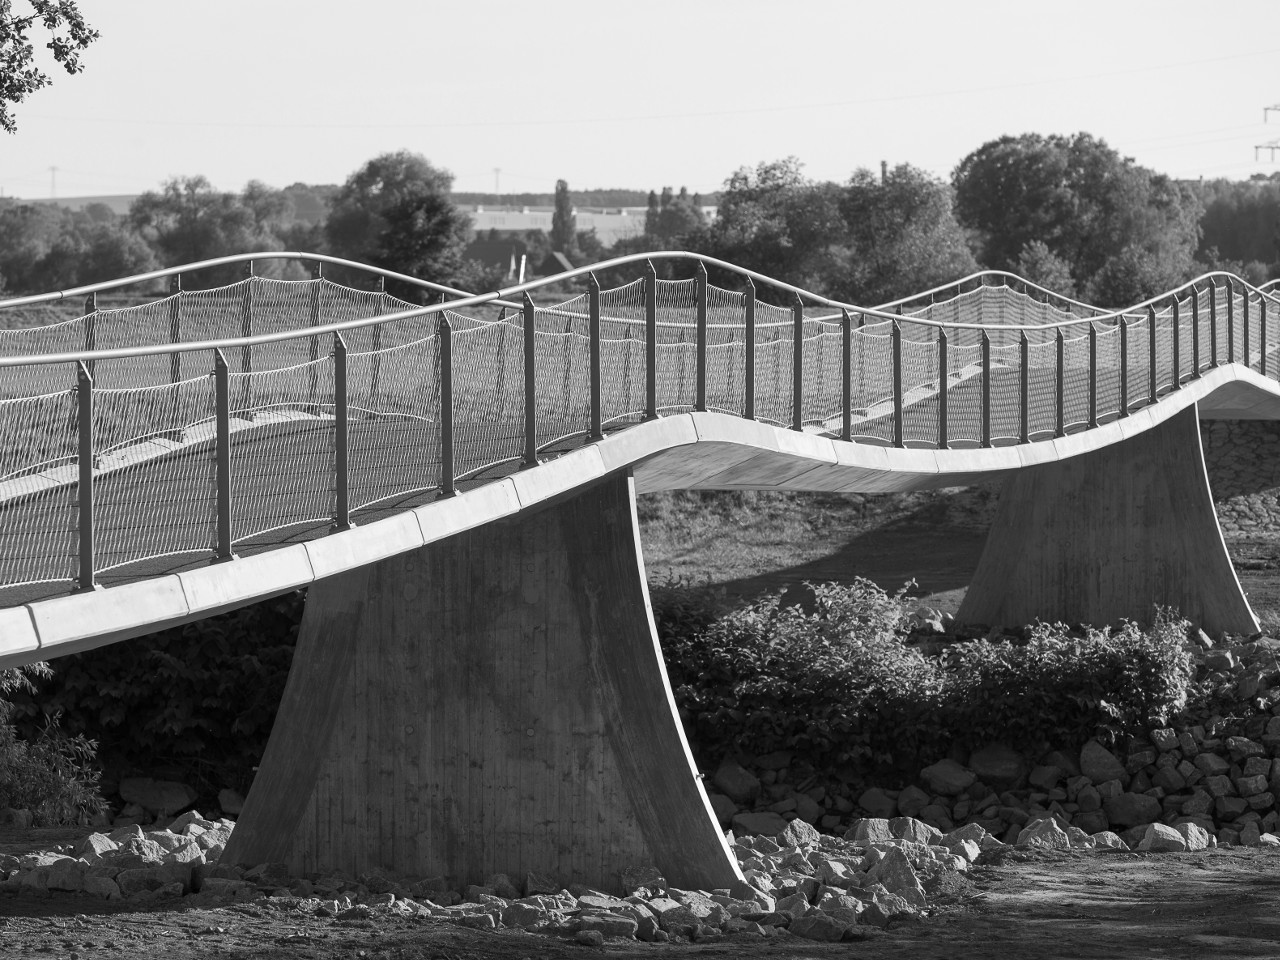 Ersatzneubau der Muldebrücke in Wernsdorf